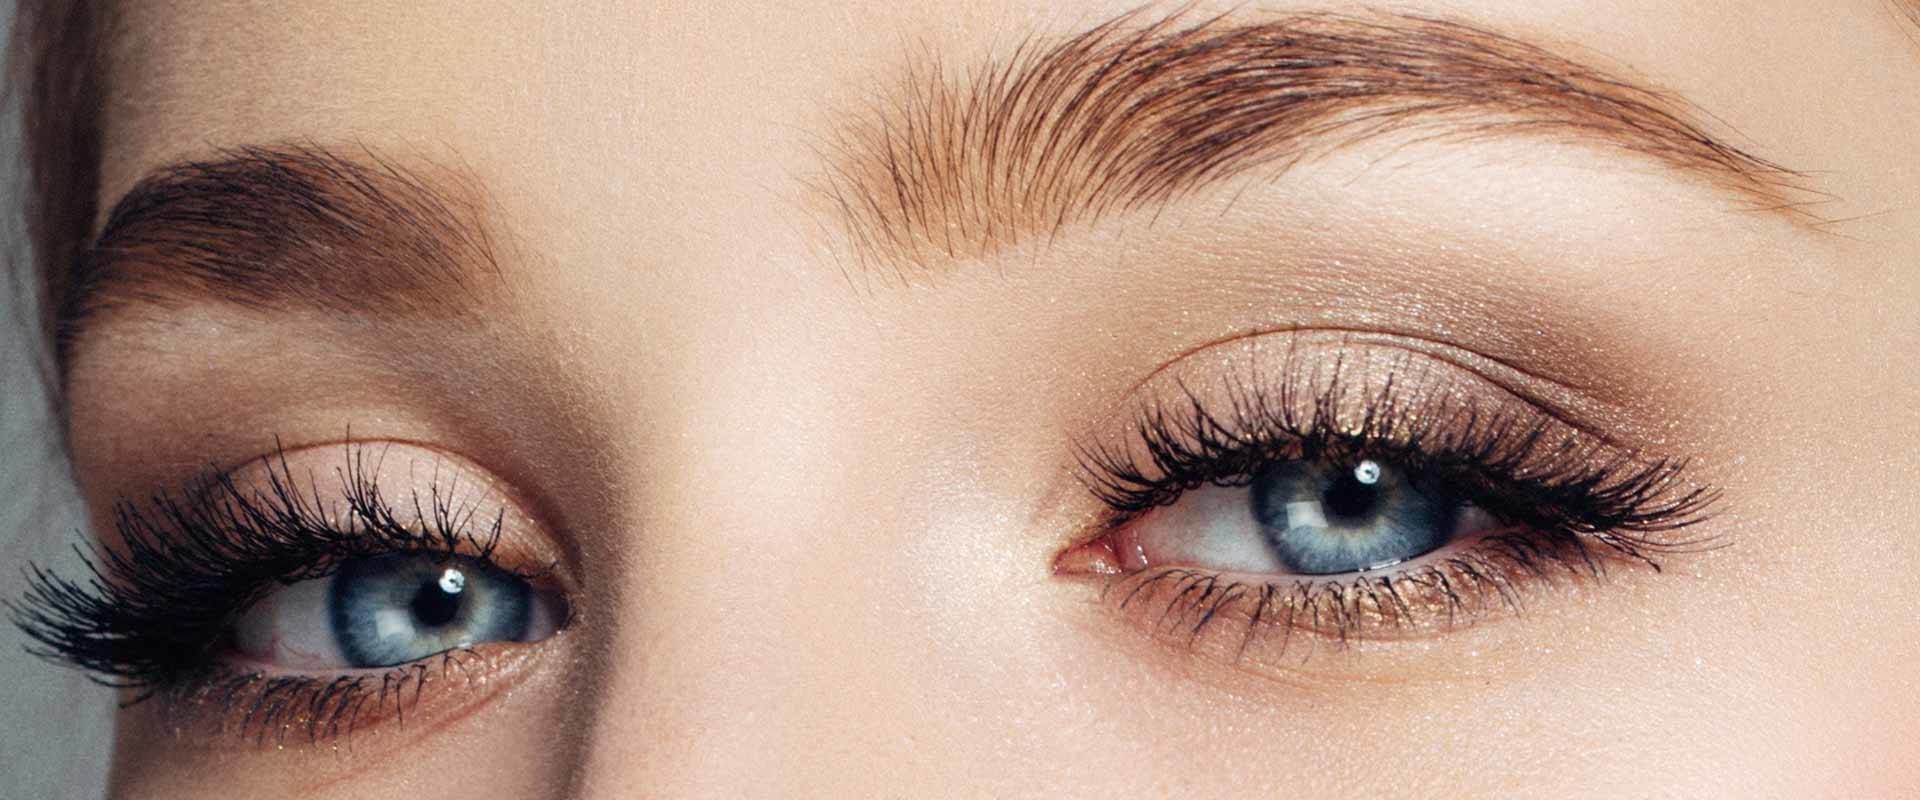 What are wispy eyelashes?